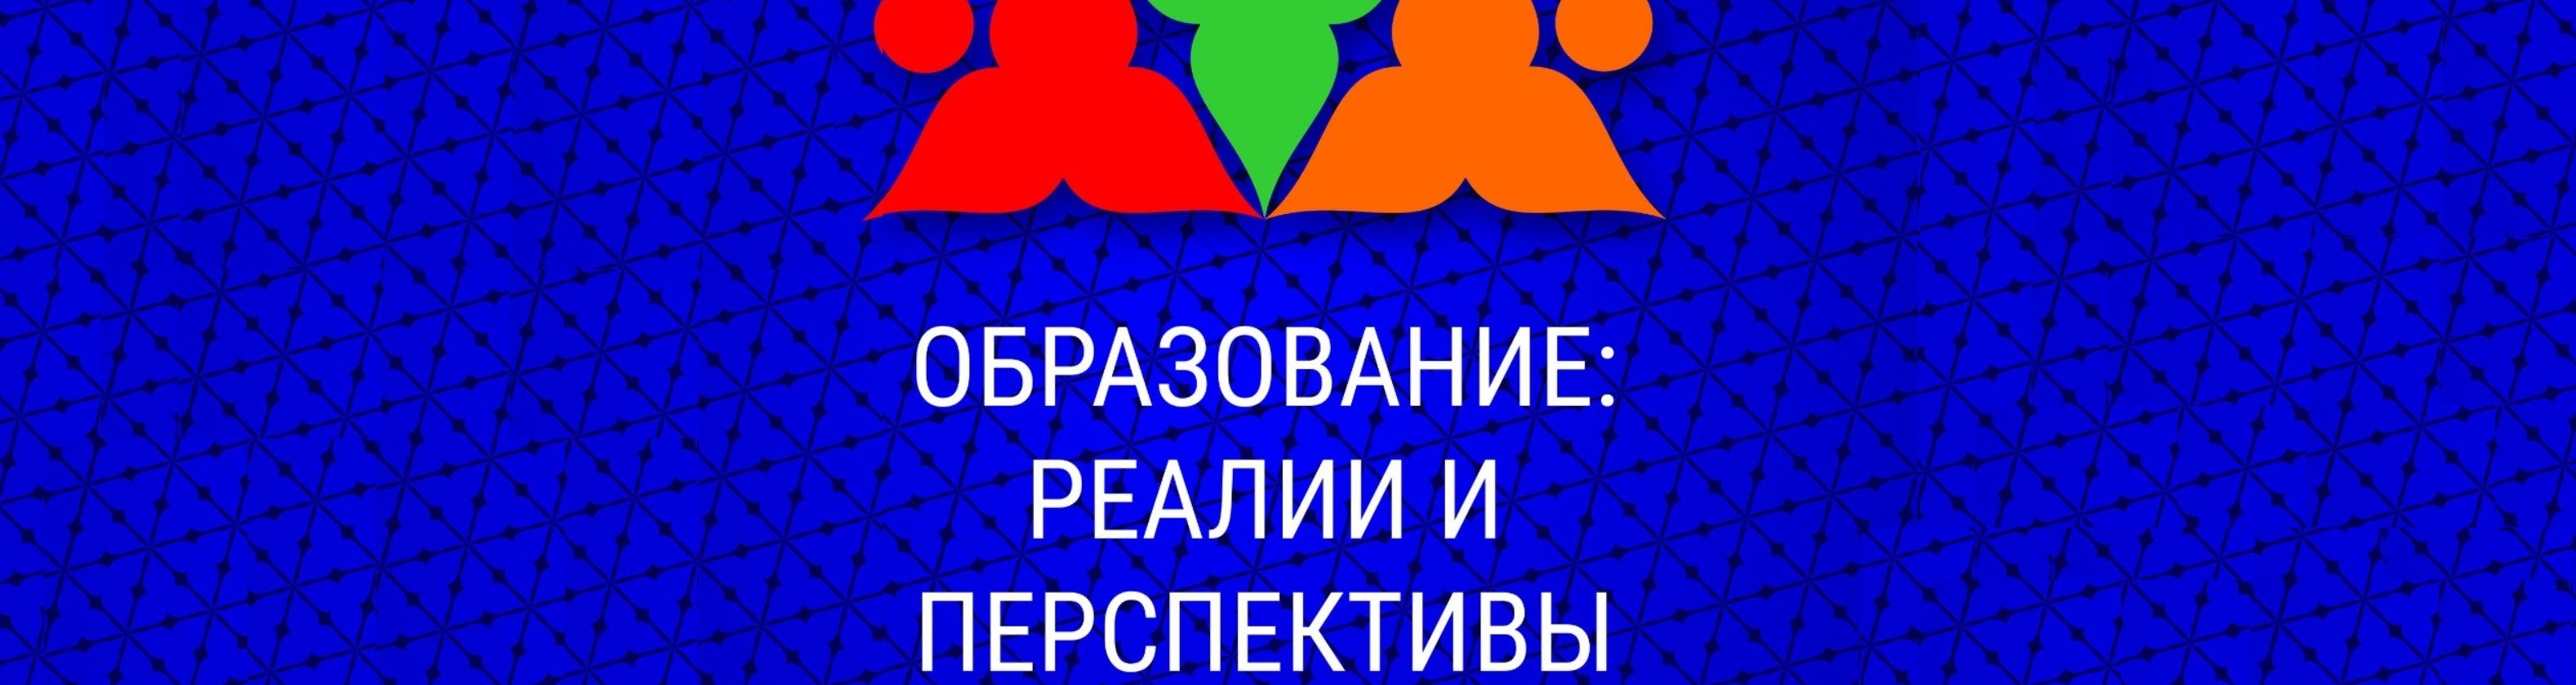 IX Международный открытый педагогический форум «Образование: реалии и перспективы», Набережные Челны